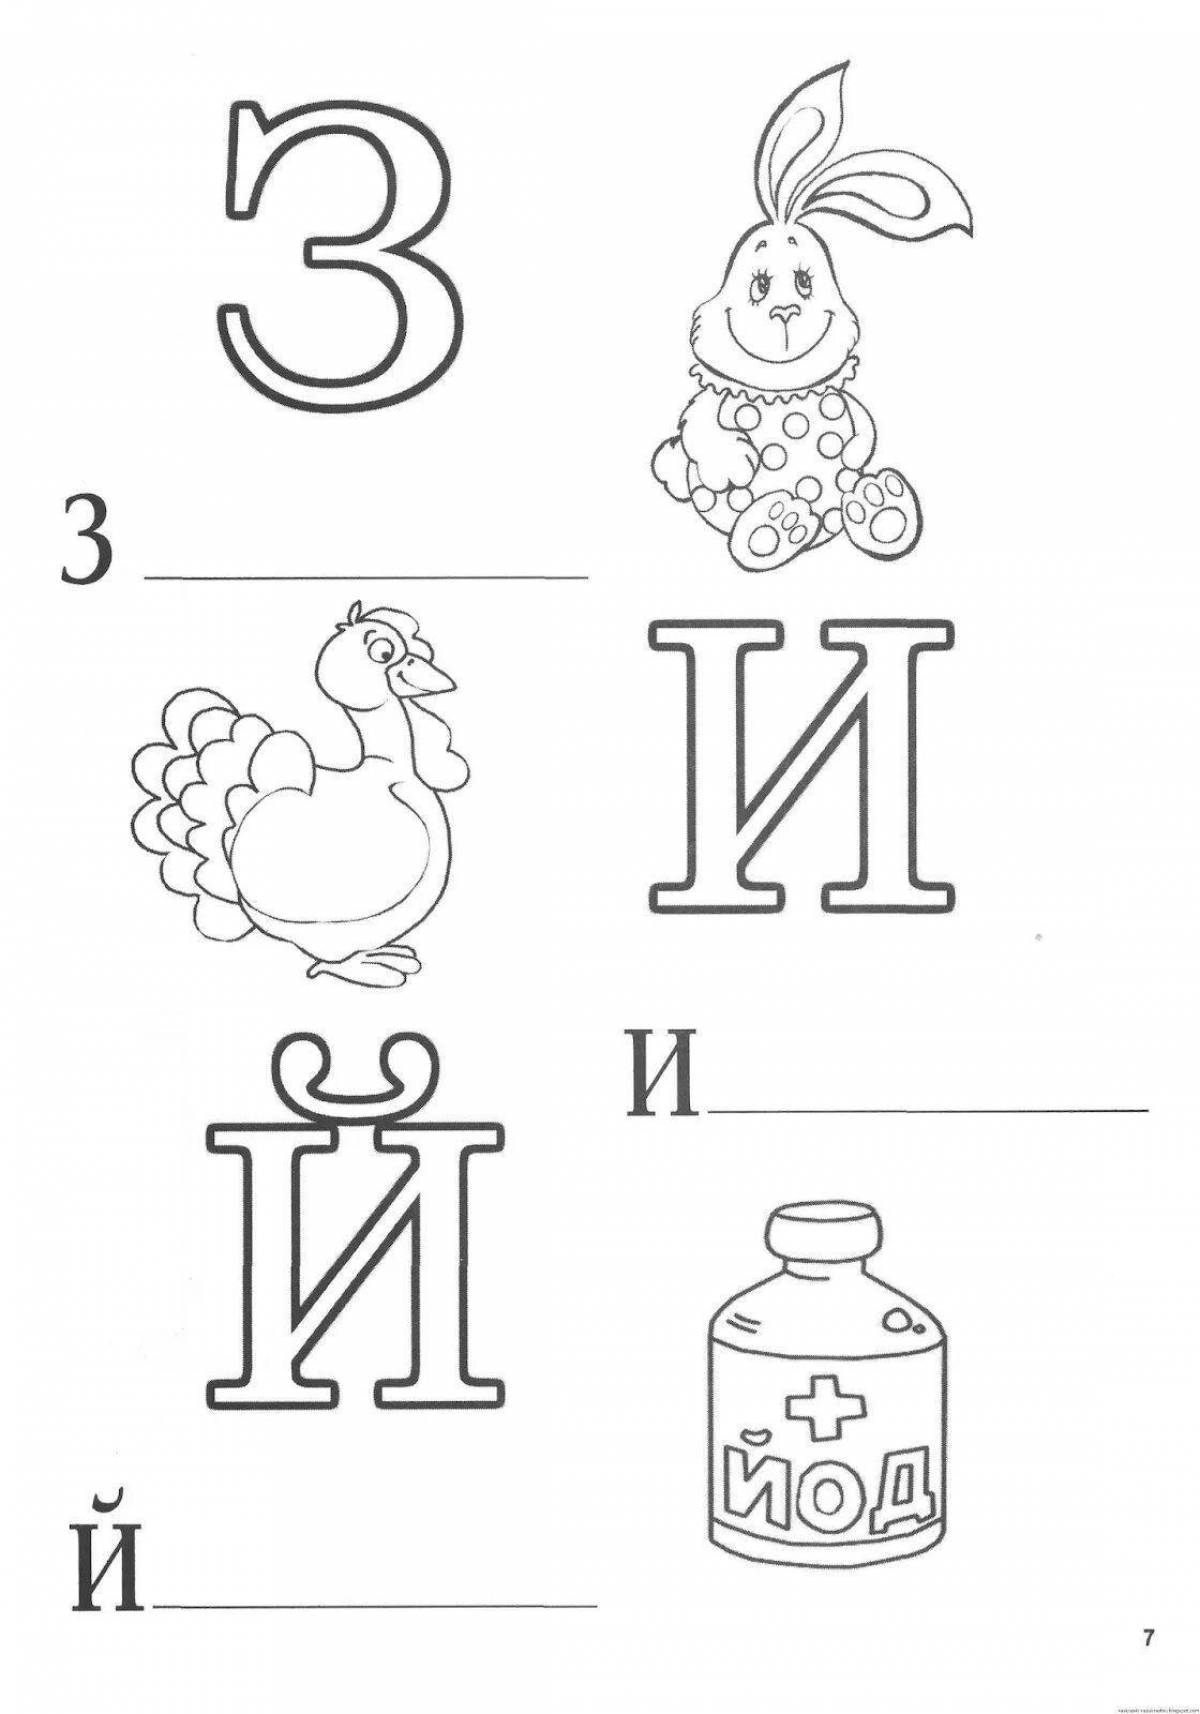 Увлекательная раскраска с алфавитом для детей 3-4 лет